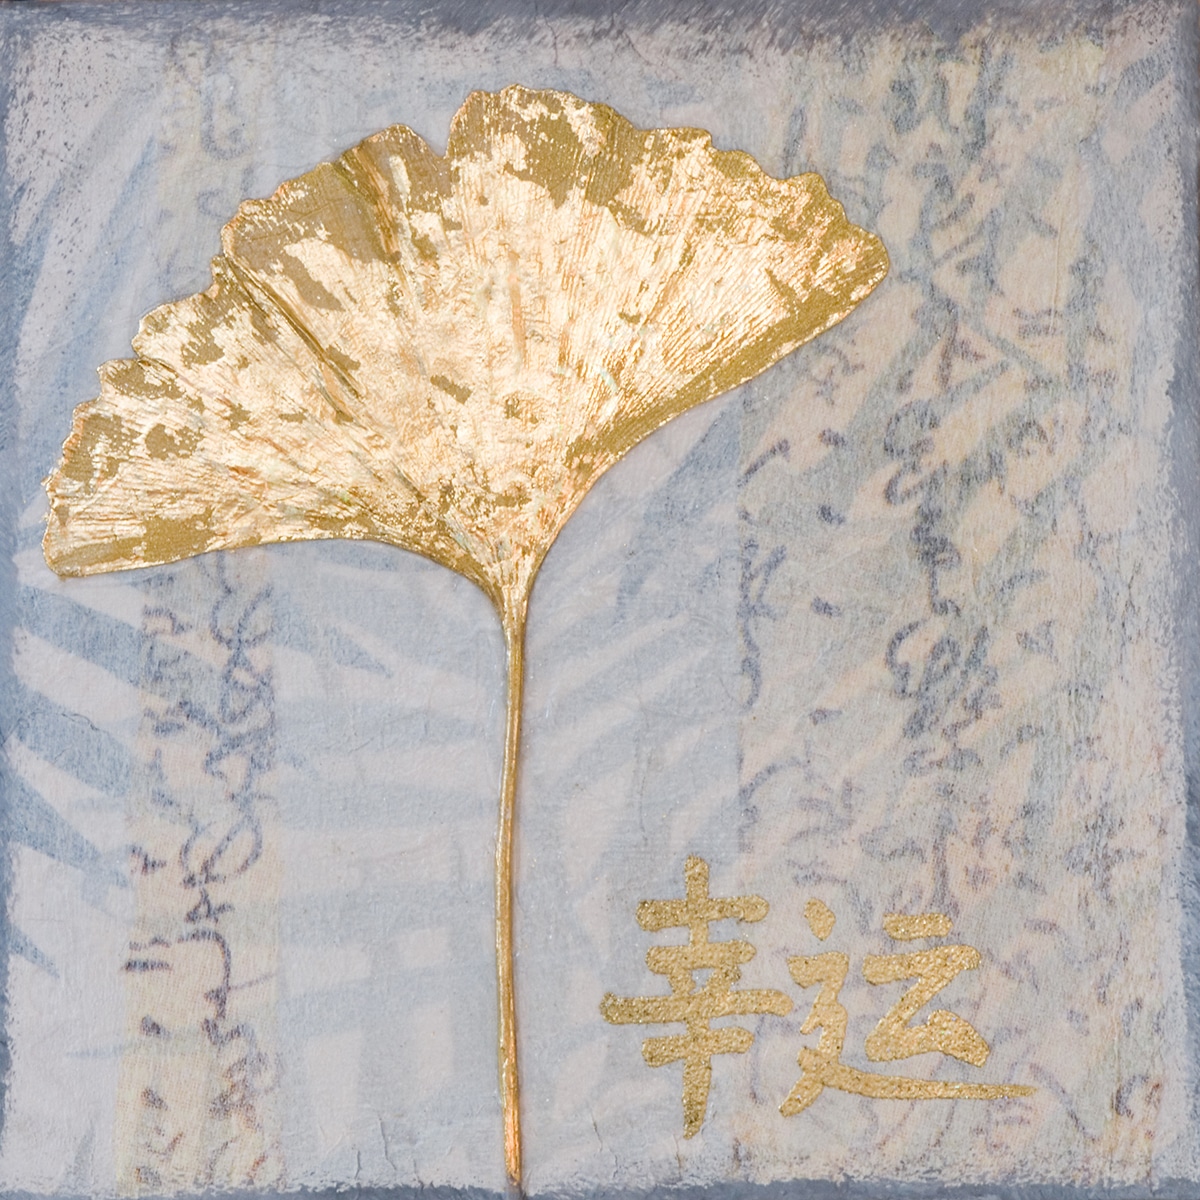 Malerei mit goldenem Ginkgoblatt und chinesischen Schriftzeichen, Symbol für Glück, Feng Shui